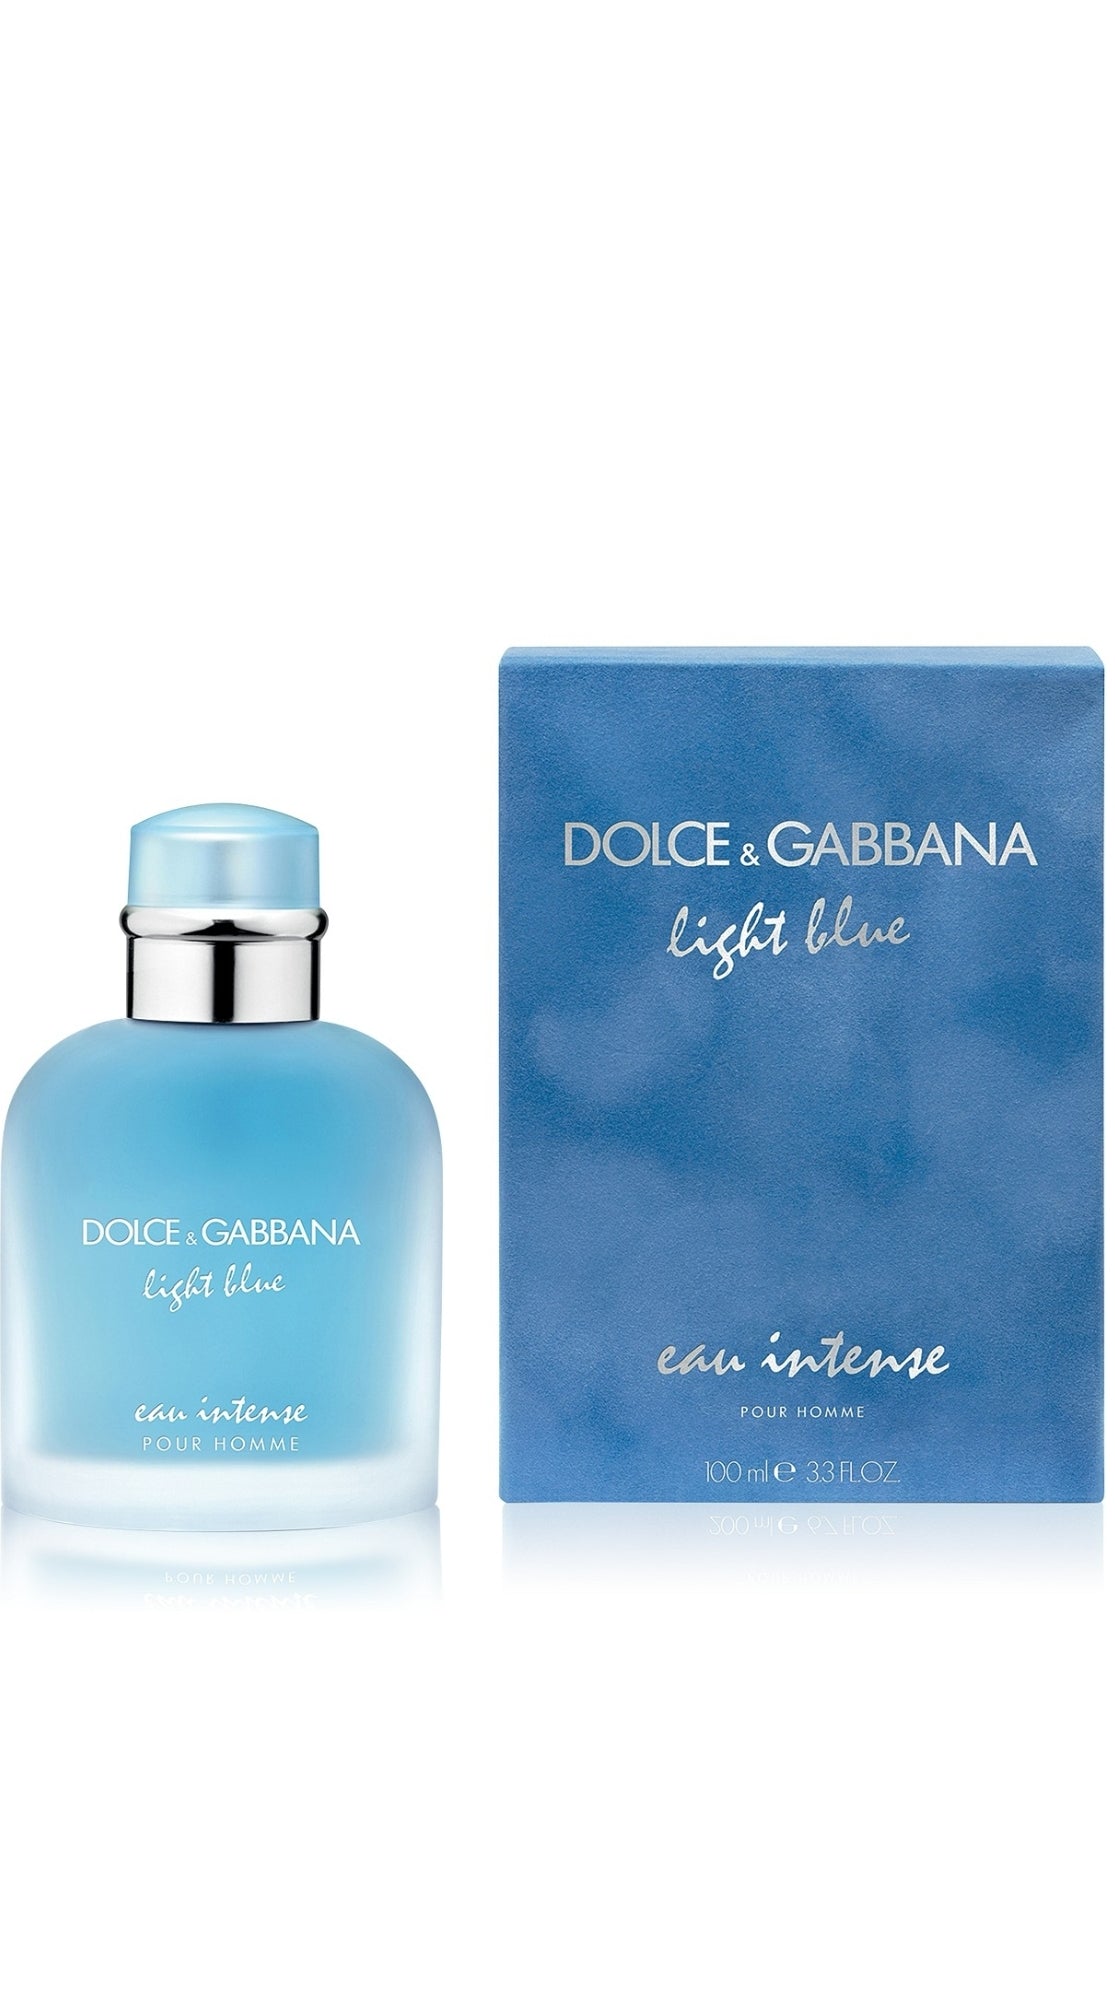 Mens Dolce & Gabbana Light Blue Eau Intense Pour Homme Eau de Parfum Fragrance Collection